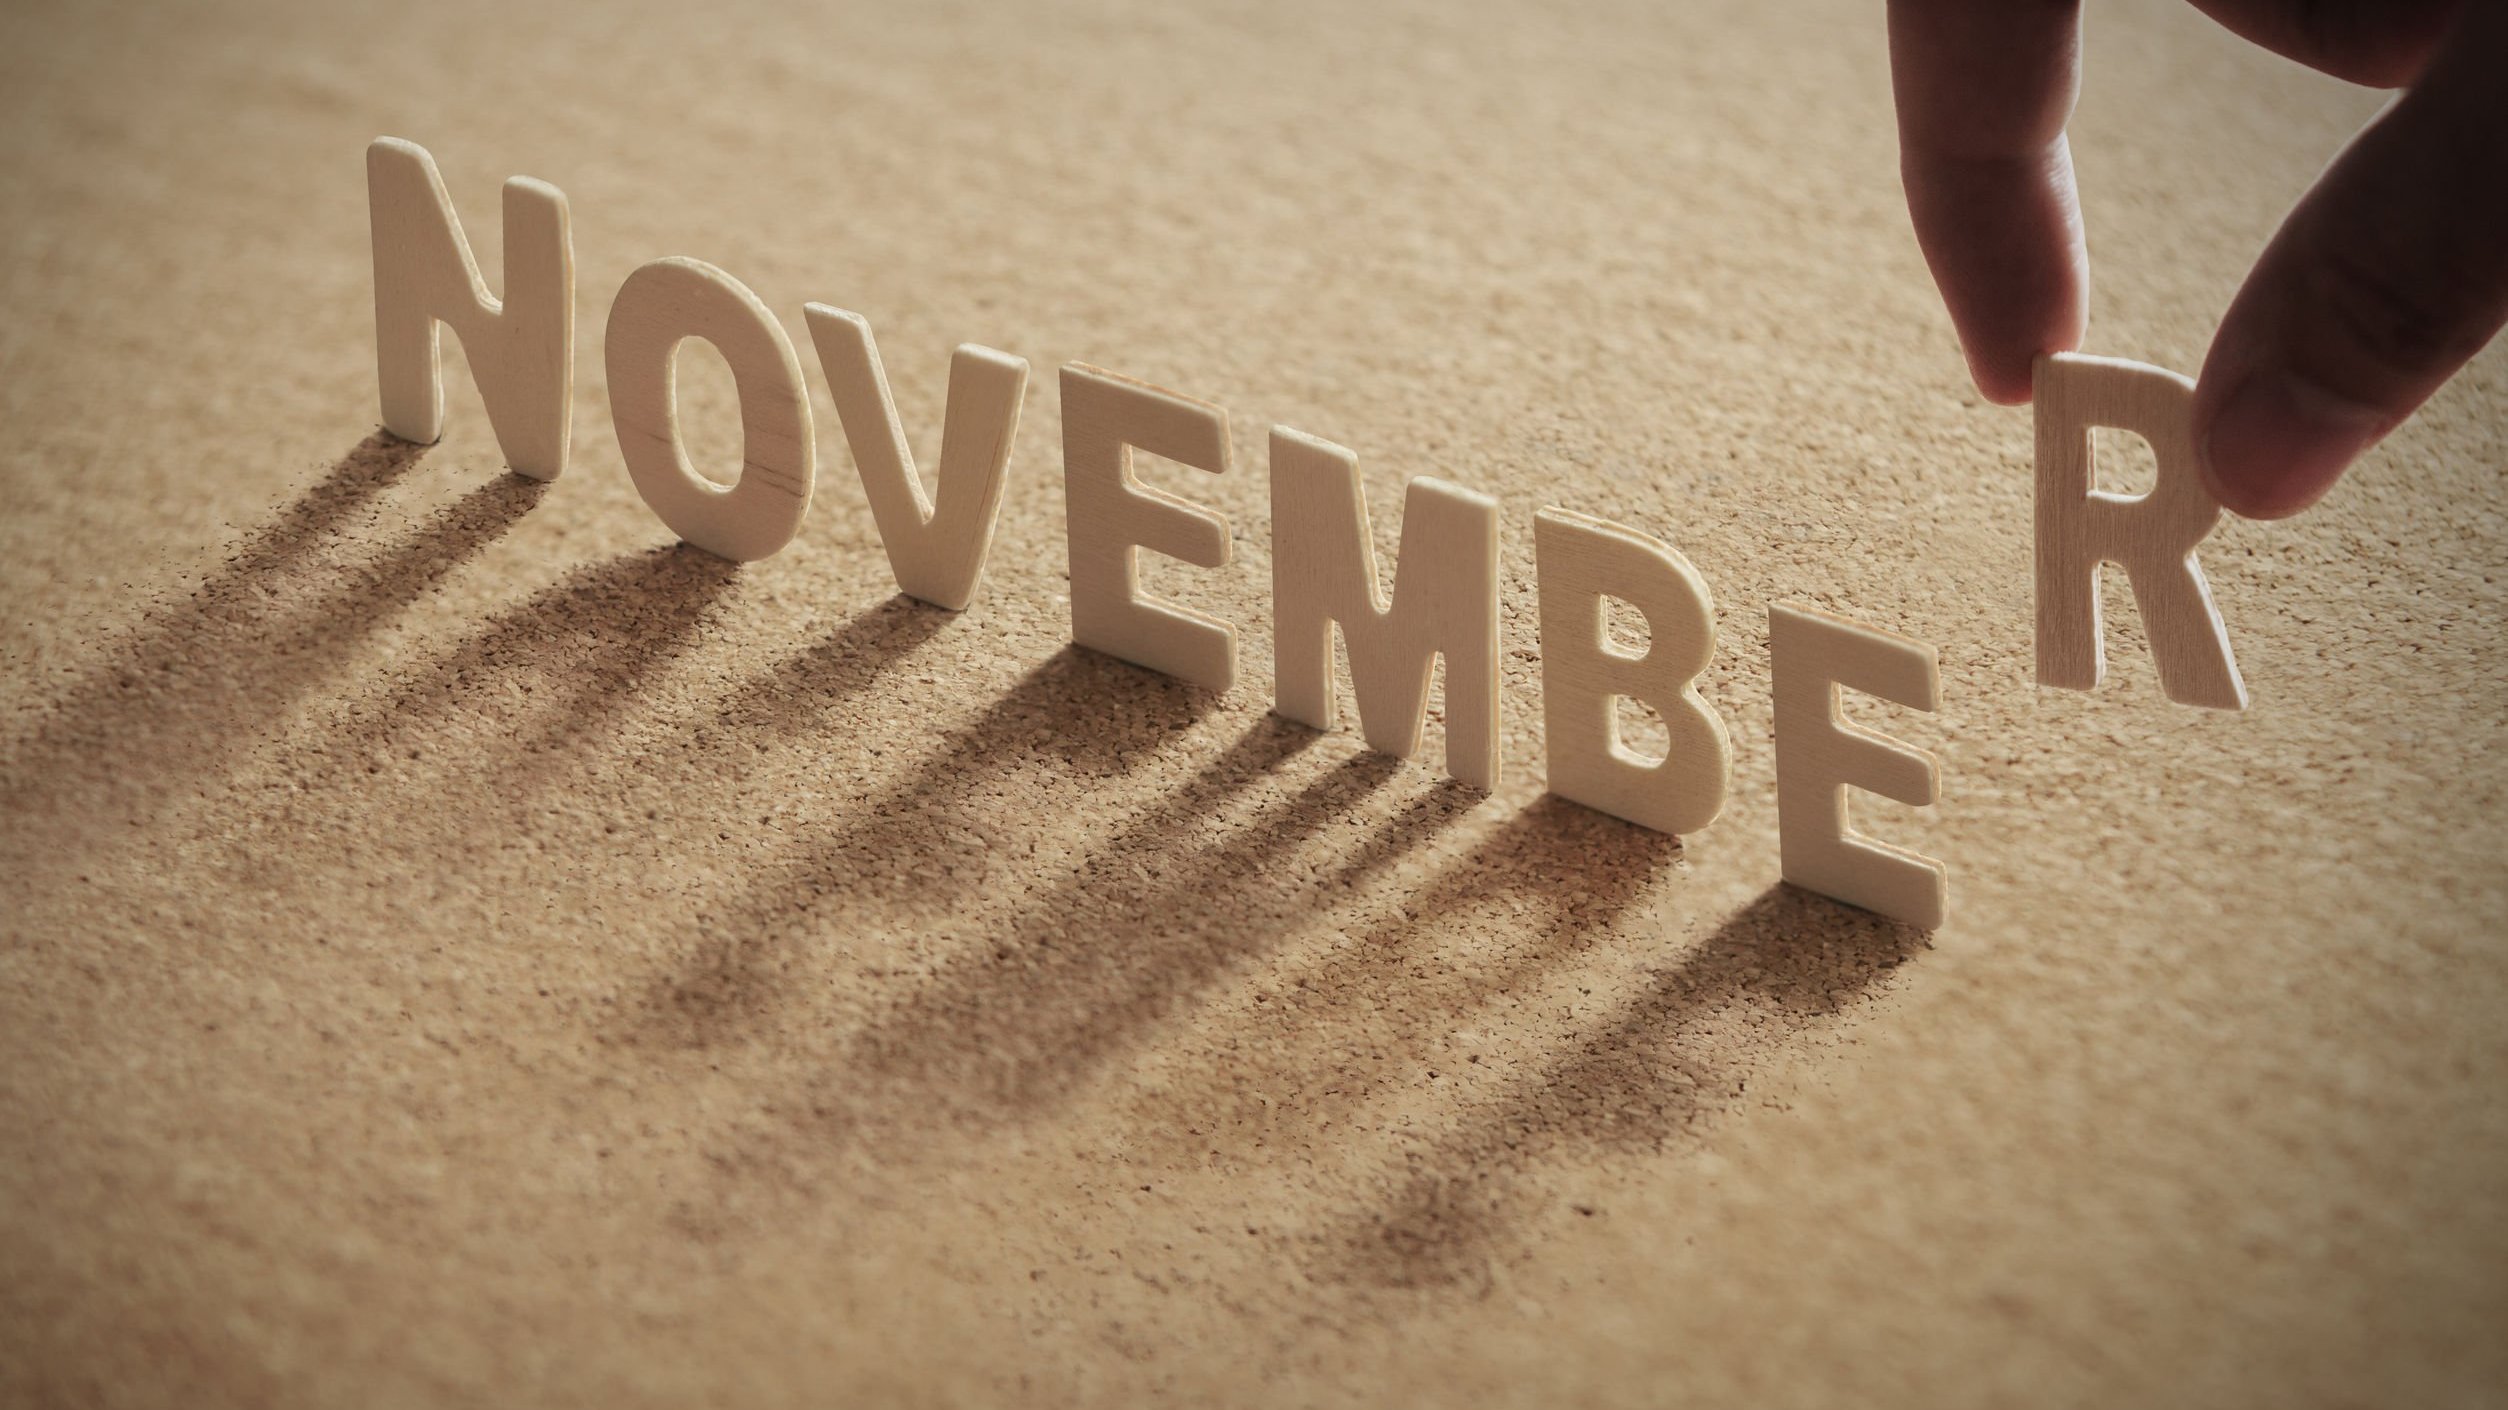 Letras formando a palavra novembro escrita em inglês